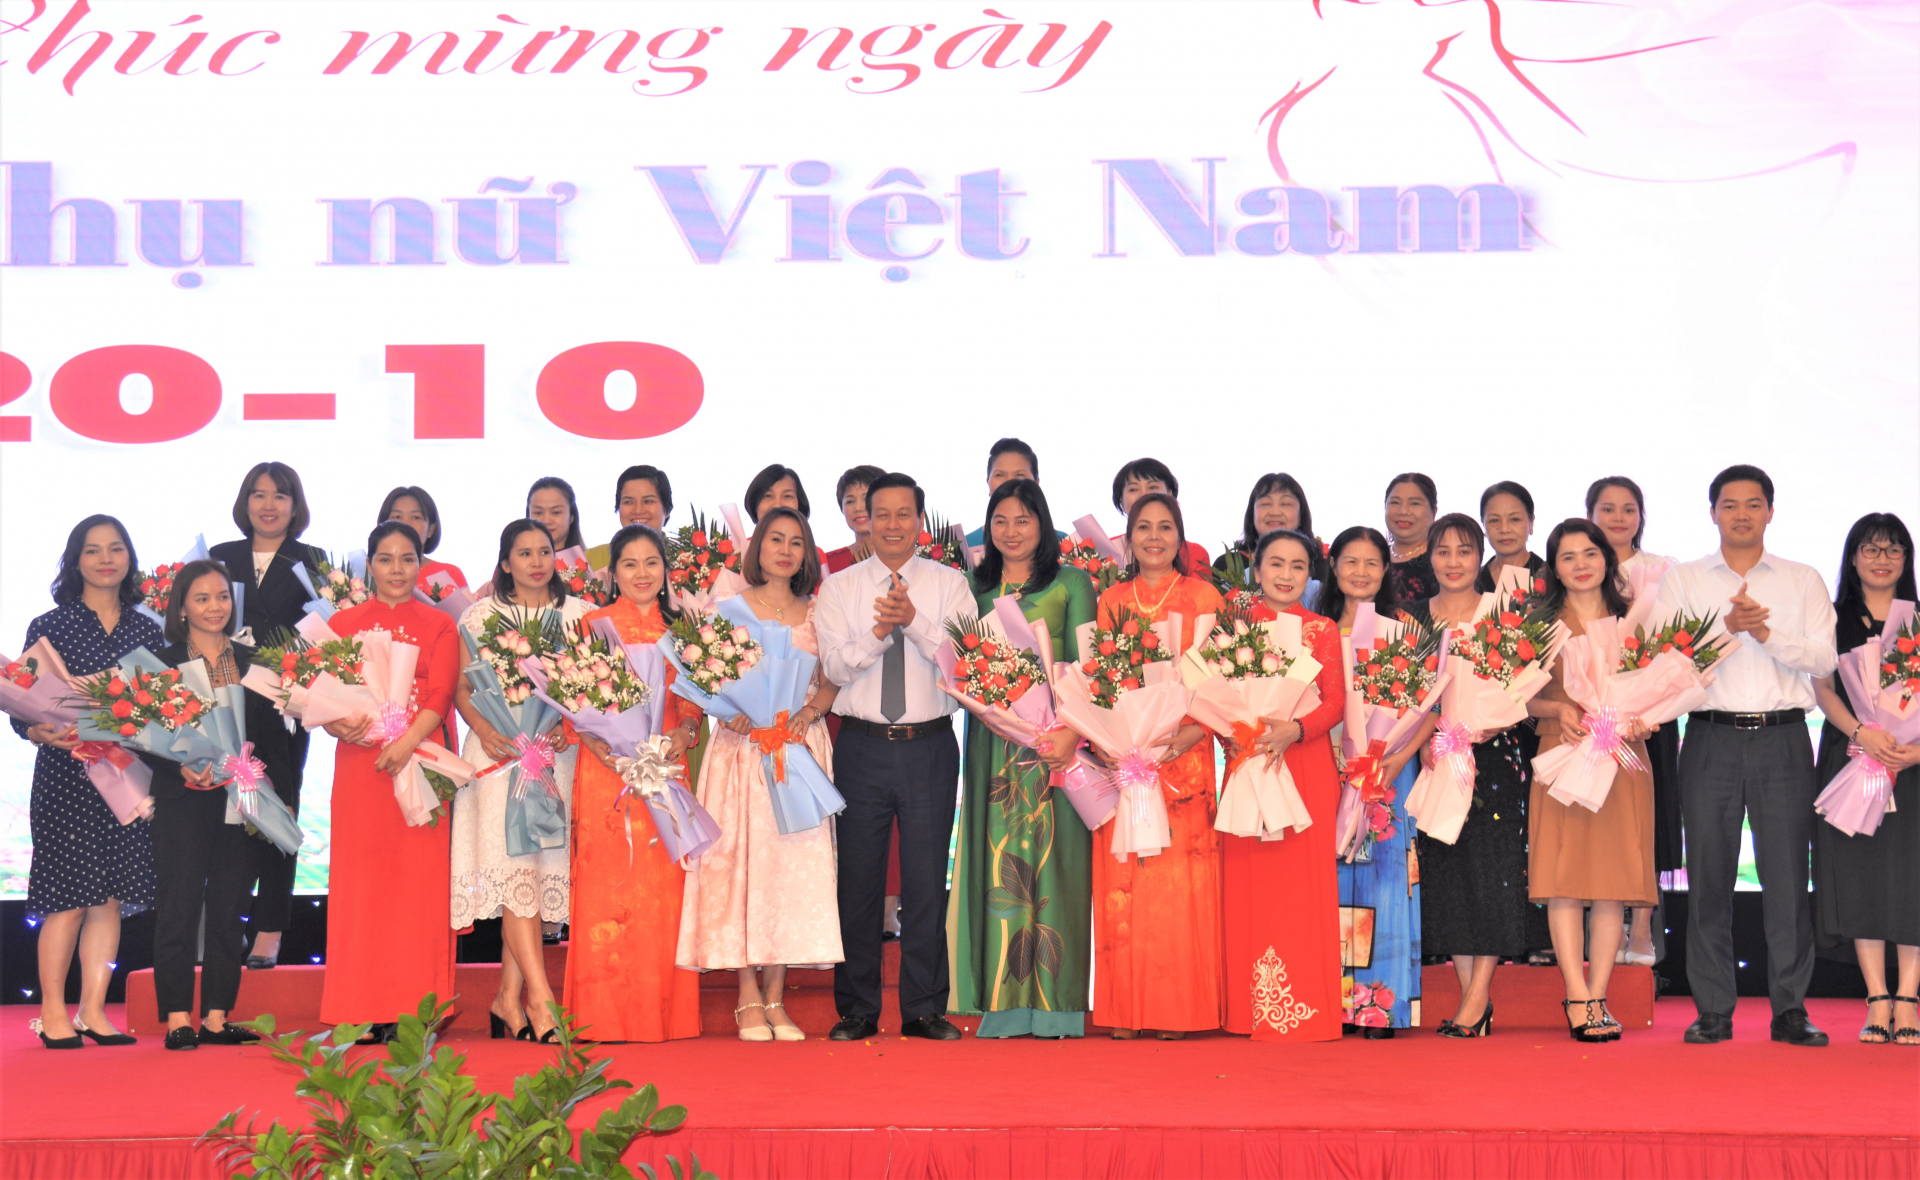 Chủ tịch UBND tỉnh Nguyễn Văn Sơn, Trưởng ban Tuyên giáo Tỉnh ủy Vũ Mạnh Hà tặng hoa cho các doanh nhân nữ nhân ngày 20.10.